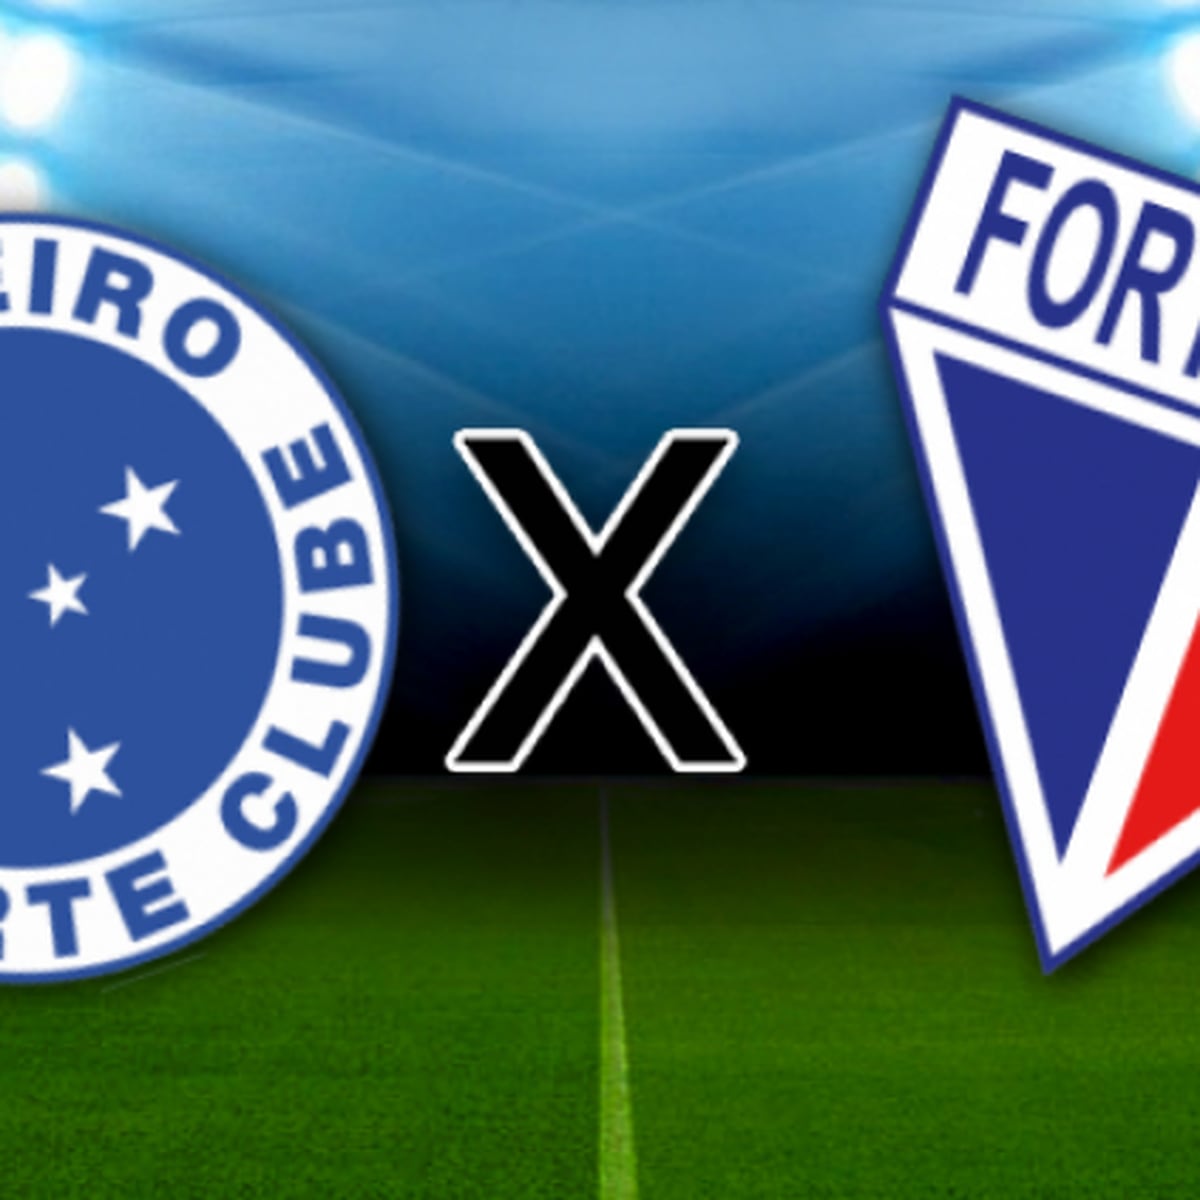 Fortaleza x Cruzeiro, AO VIVO, Campeonato Brasileiro 2023